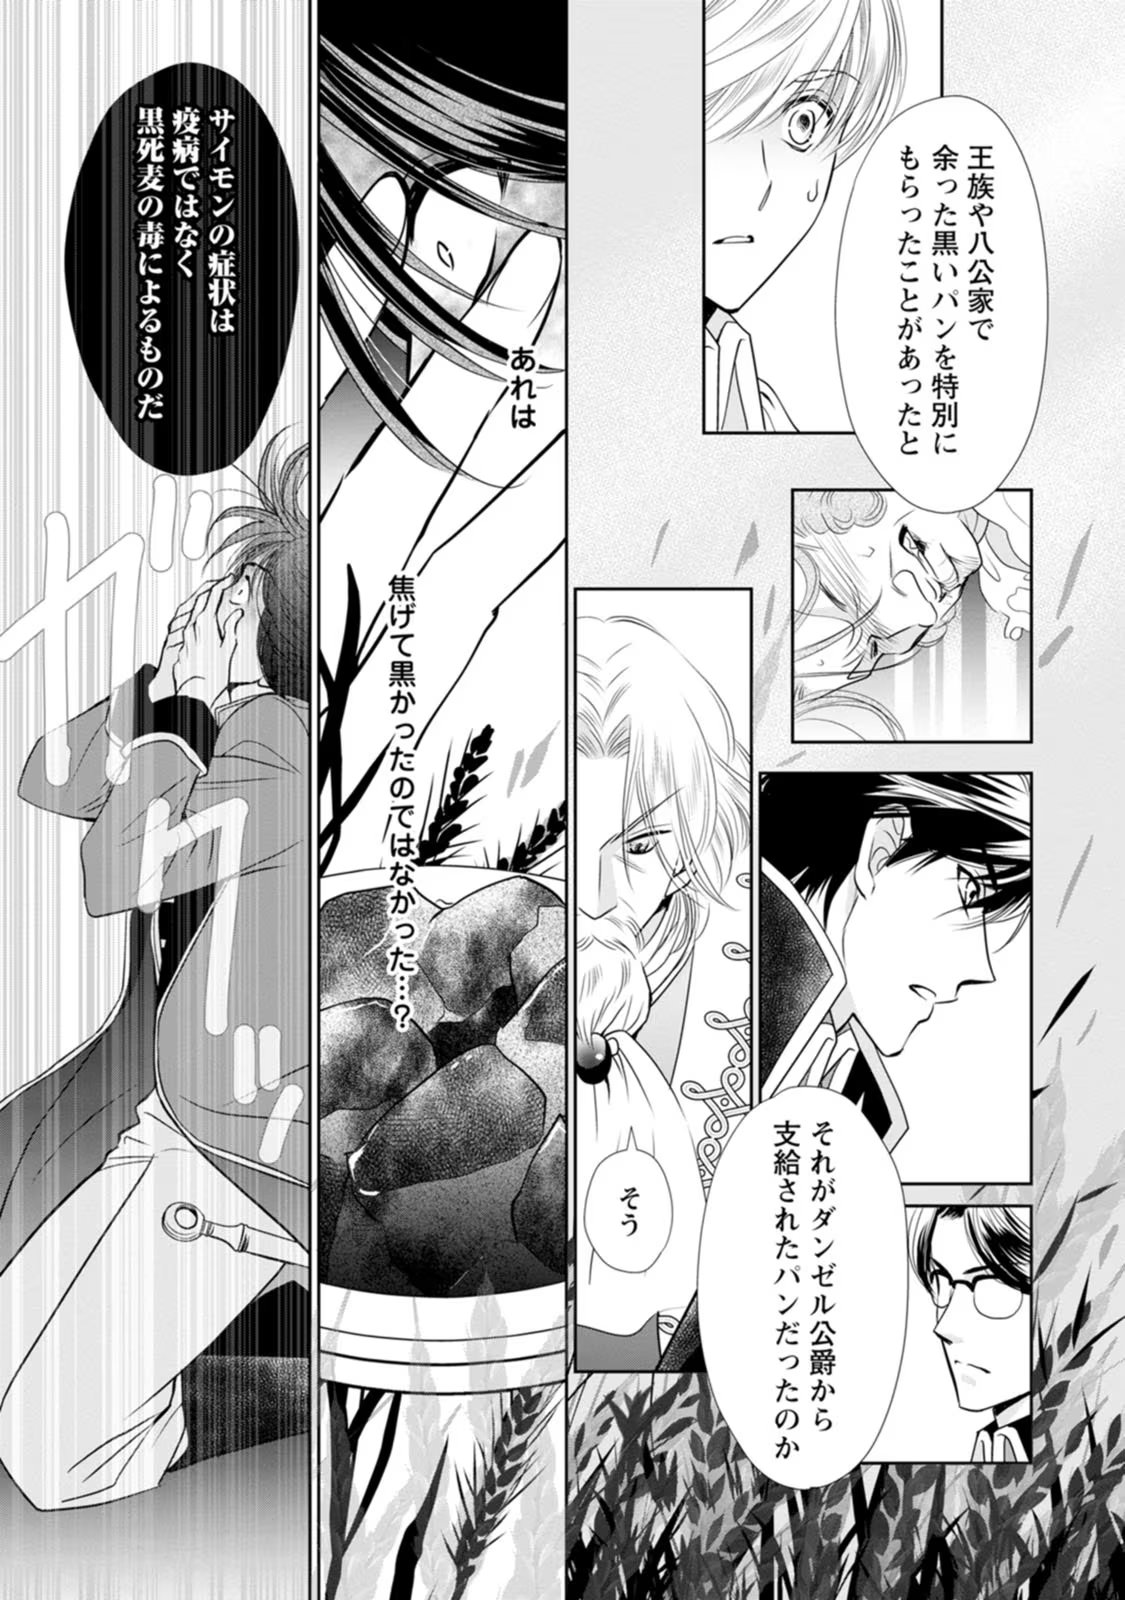 Shinjitsu no Ai wo Mitsuketa to Iwarete Konyaku Haki Saretanode, Fukuen wo Semararete mo Imasara mo Osoi desu! - Chapter 17 - Page 7